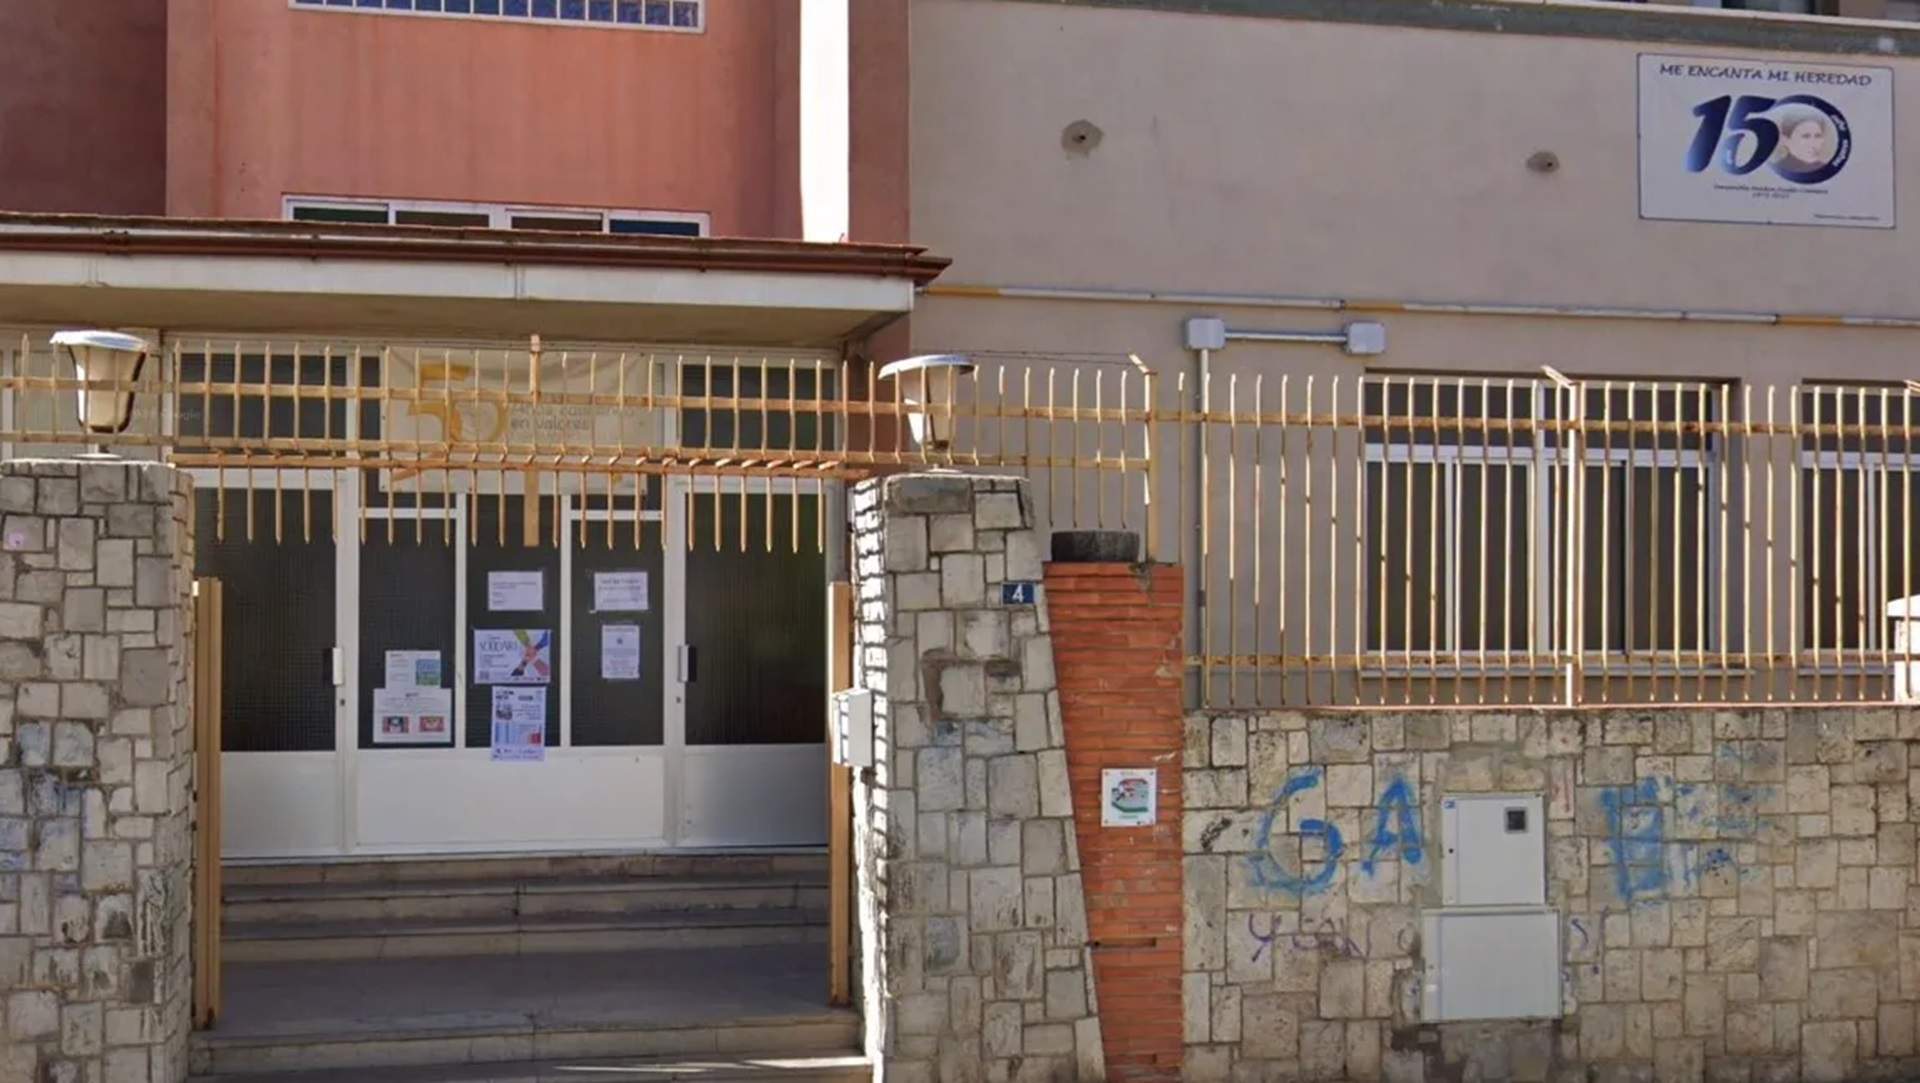 Cinc exalumnes d'un centre de València denuncien un professor per utilitzar teràpies de conversió sexual